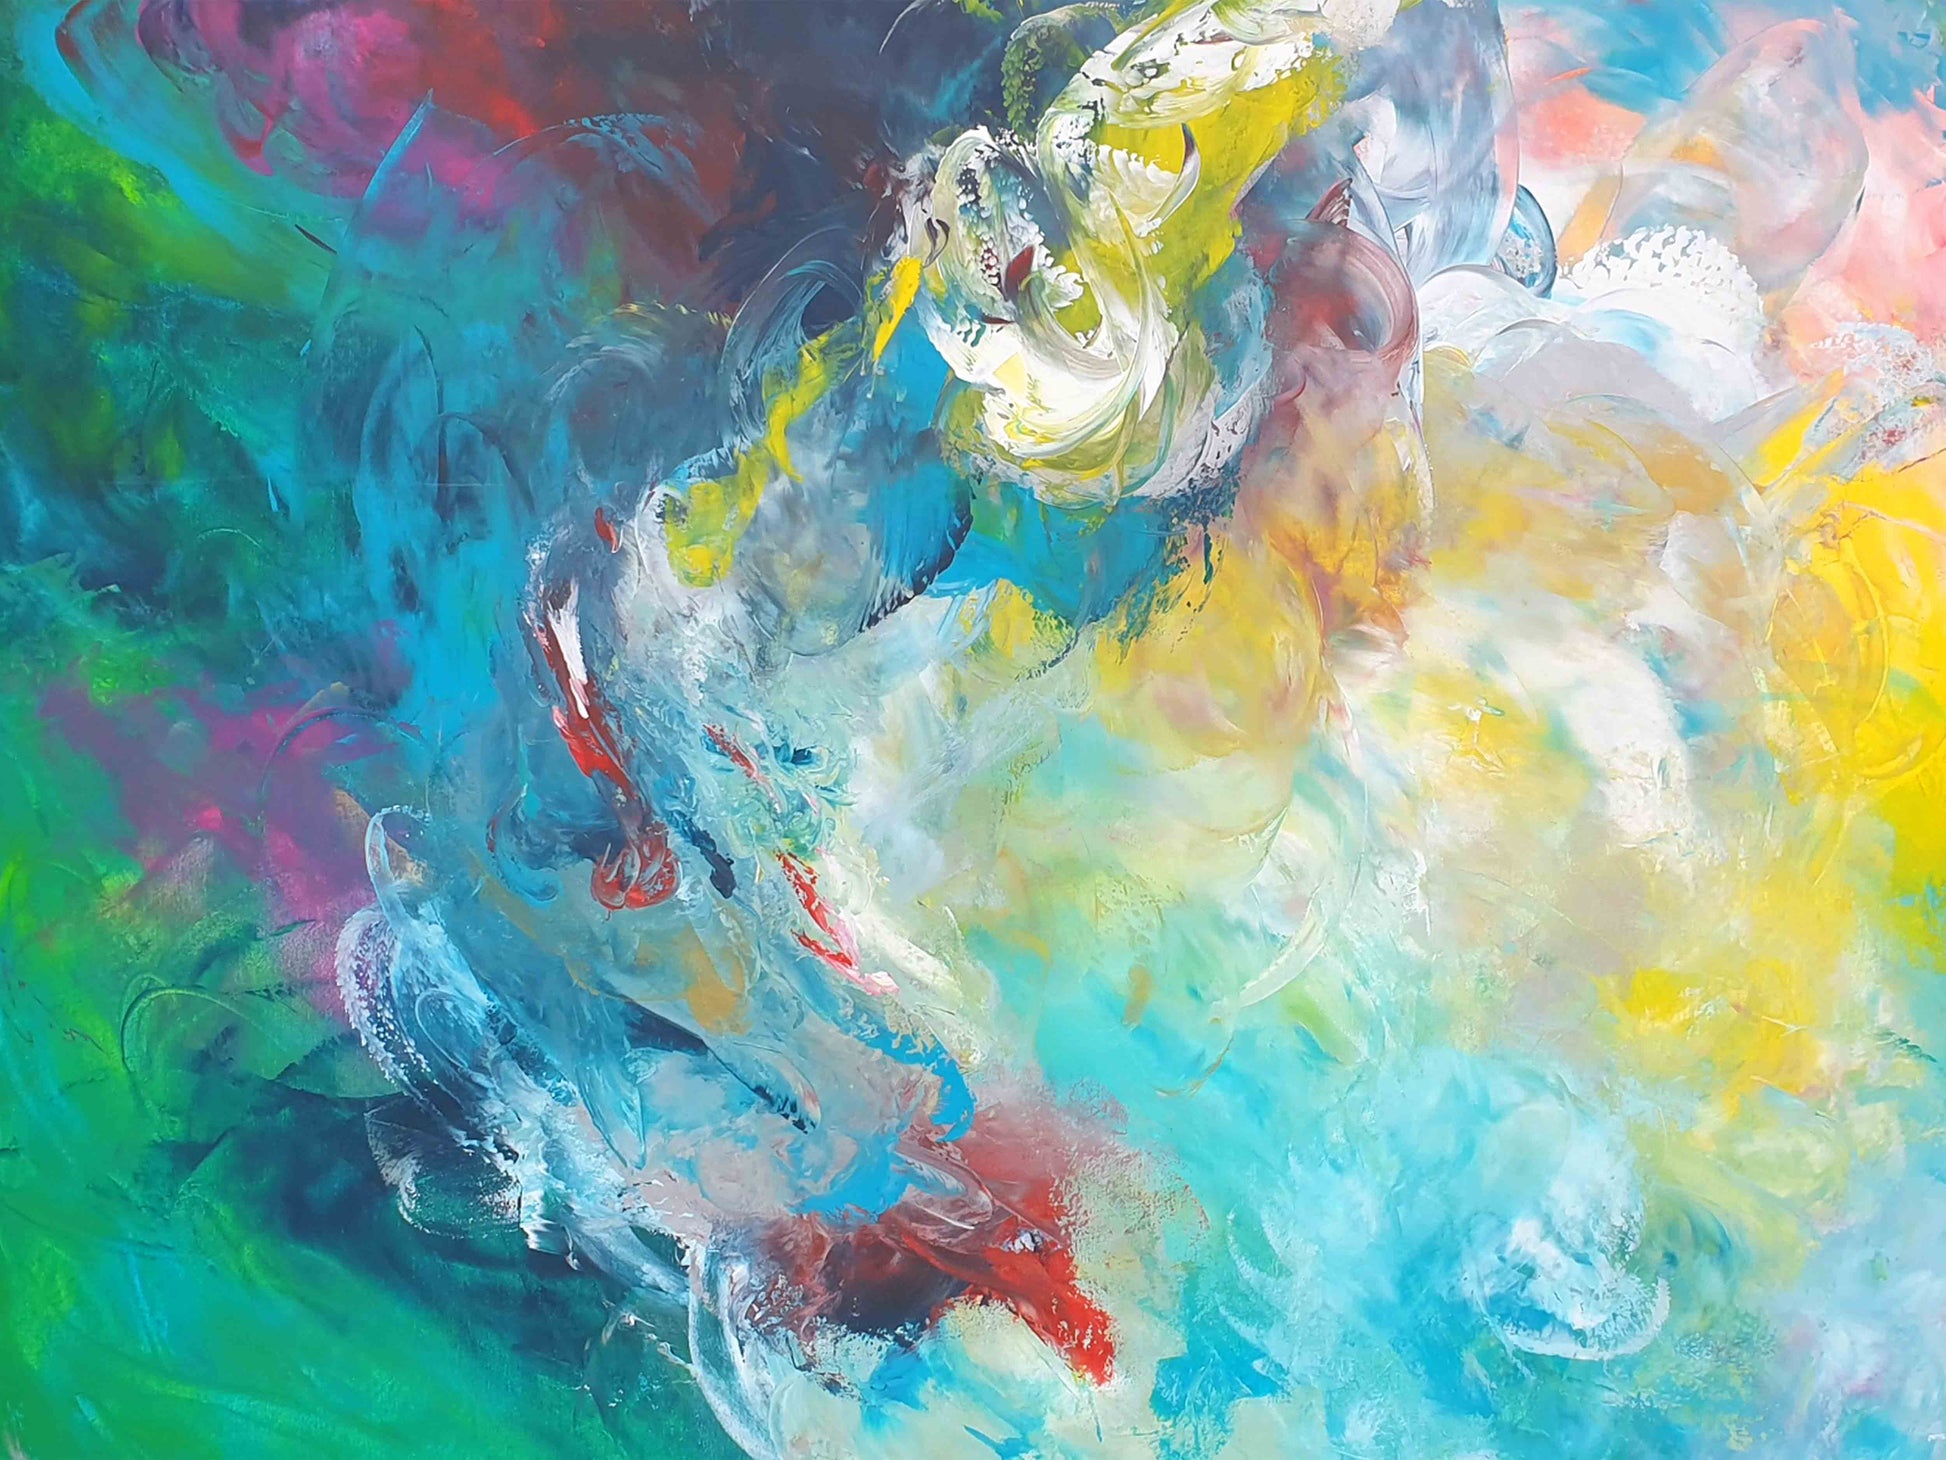 Motiv Kuscheldecke FORREST GUMP_200 x 150 cm, abstraktes Bild über das ganze Farbspektrum